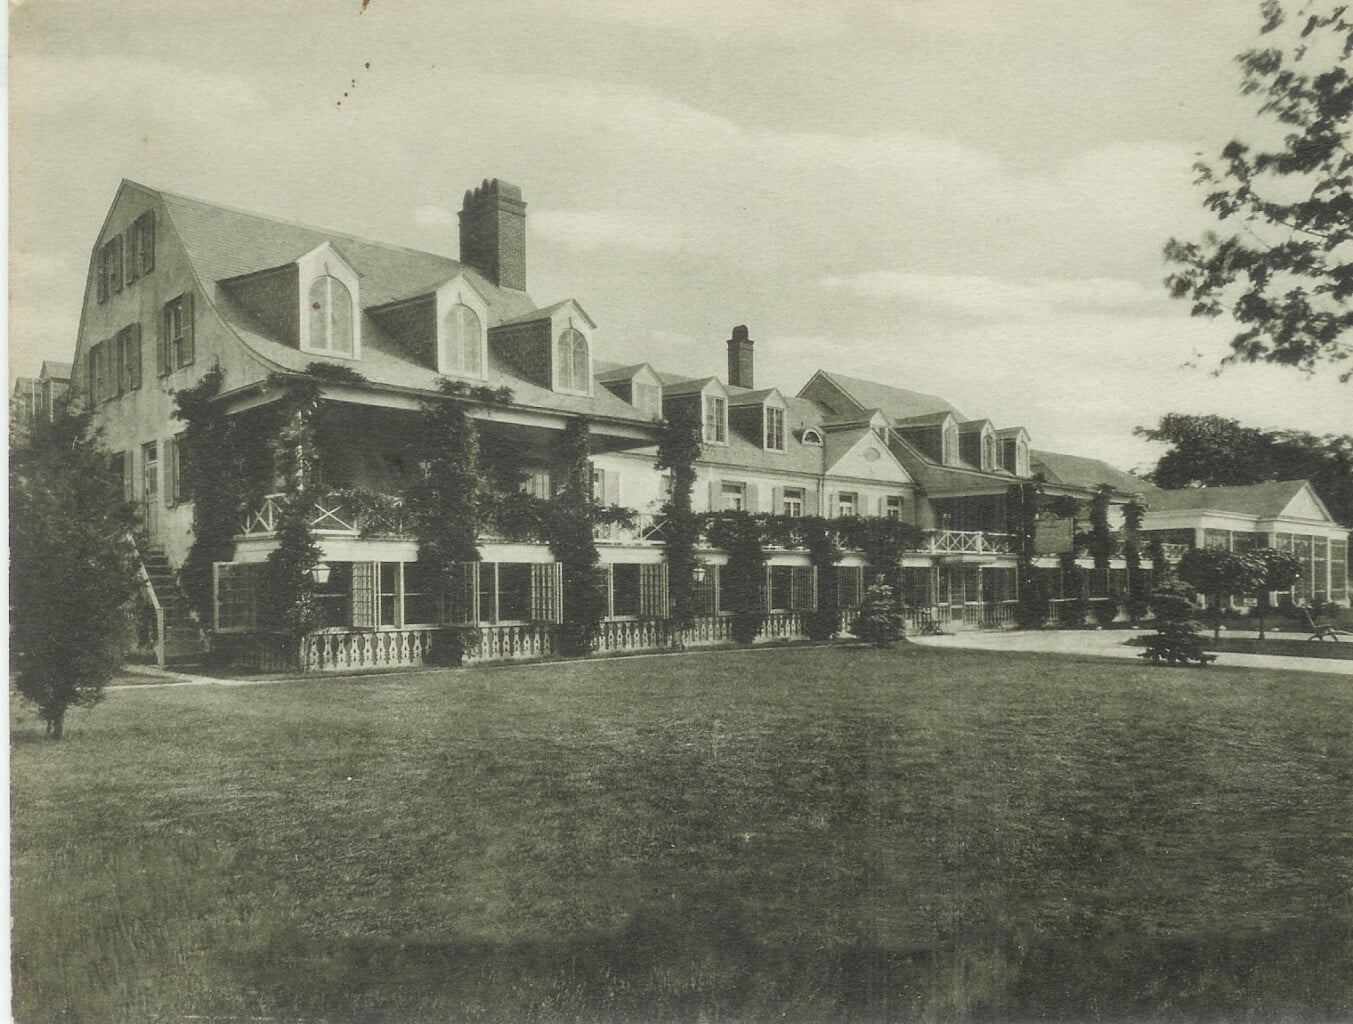 Historic image of Canoe Place Inn, on the site of America's oldest Inn.